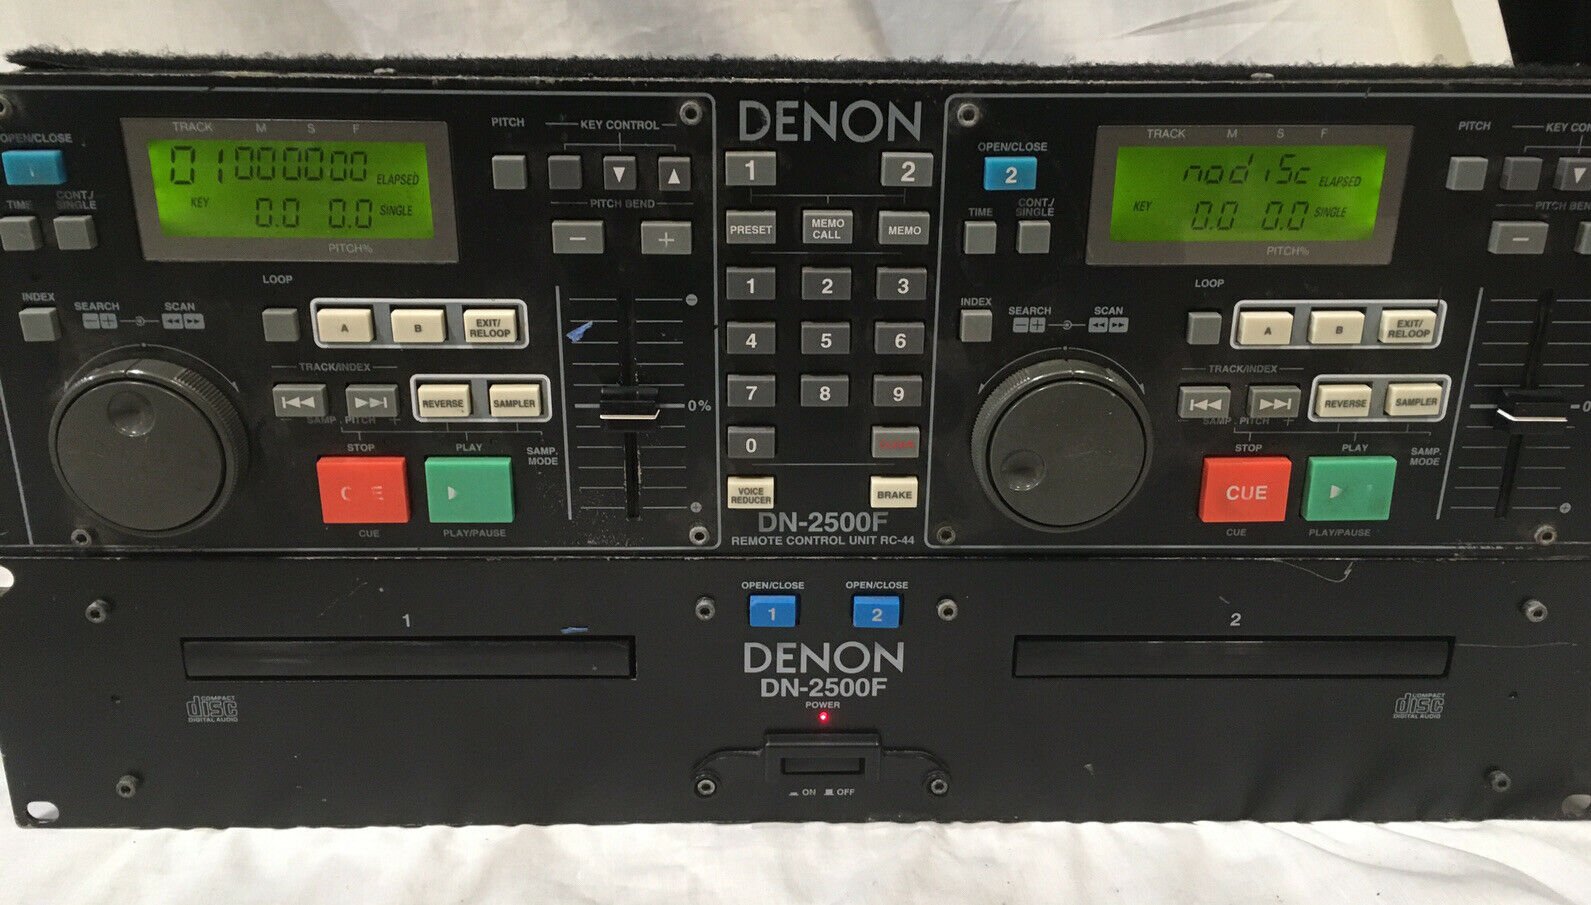 Denon Dn-2500f Dual Cd Player W/ Remote Control Rc-44 Dj Controller